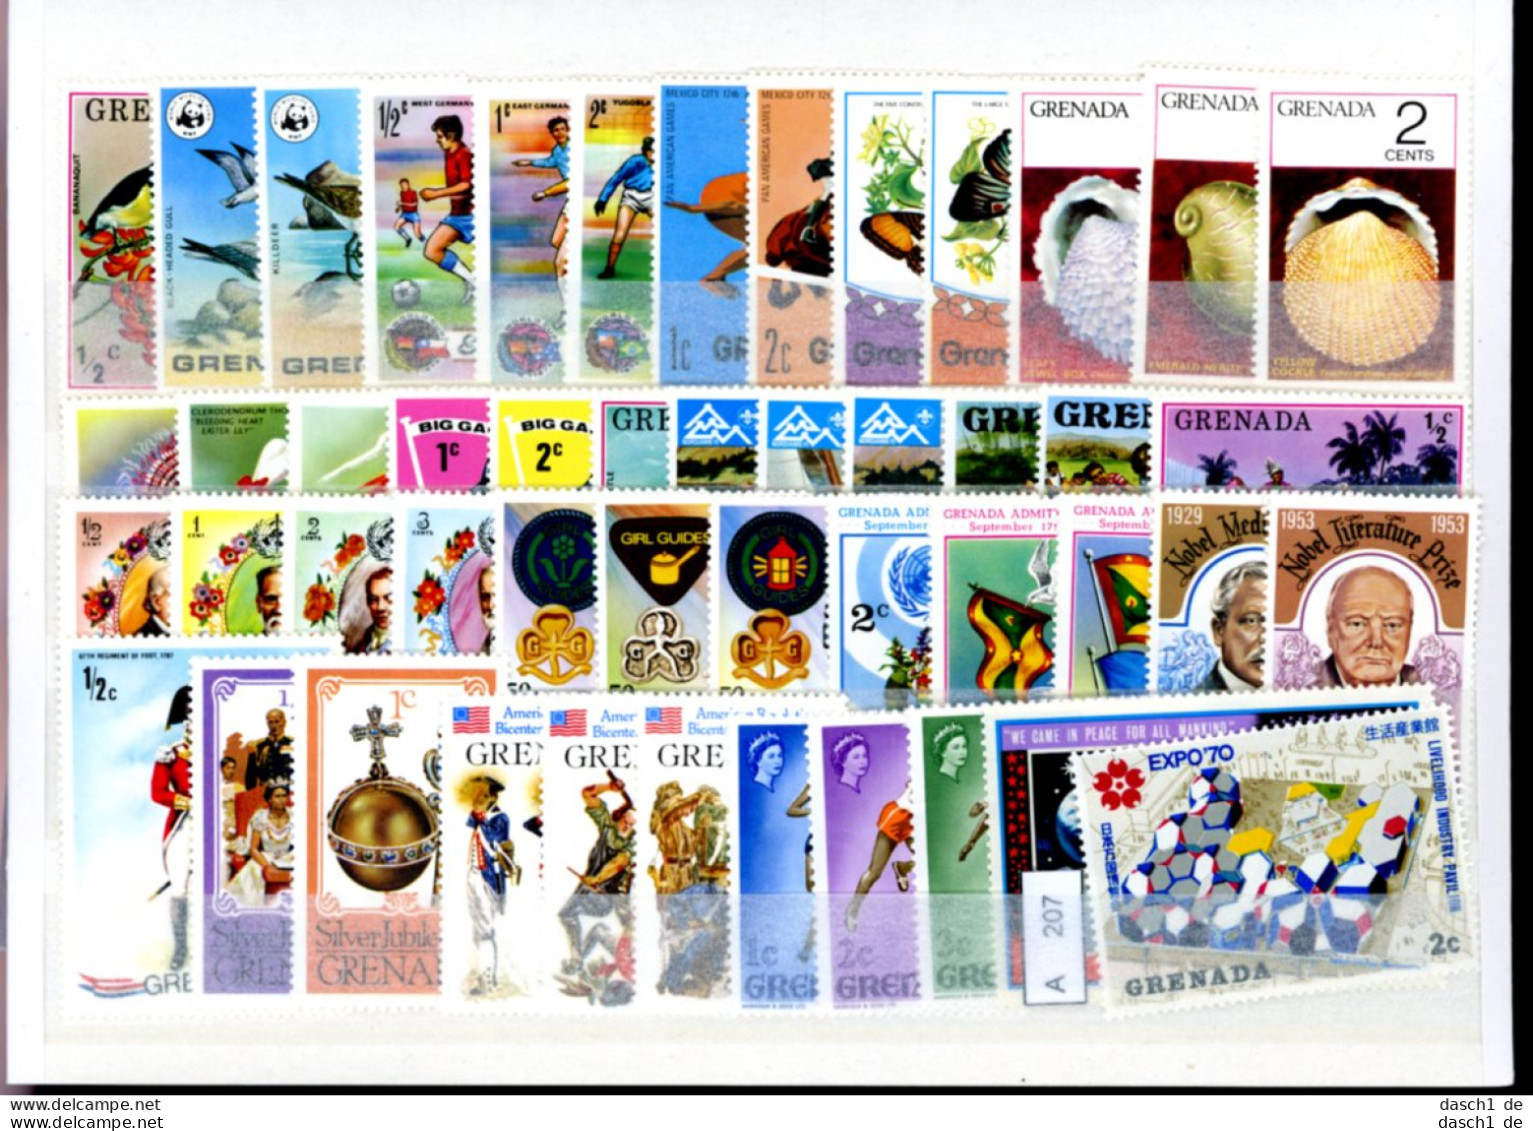 Slg. Postfrische Marken, Xx, 4 Lose Auf A5-Karten Dichtgesteckt, Schwerpunkt Motivmarken, Grenada - Grenada (1974-...)